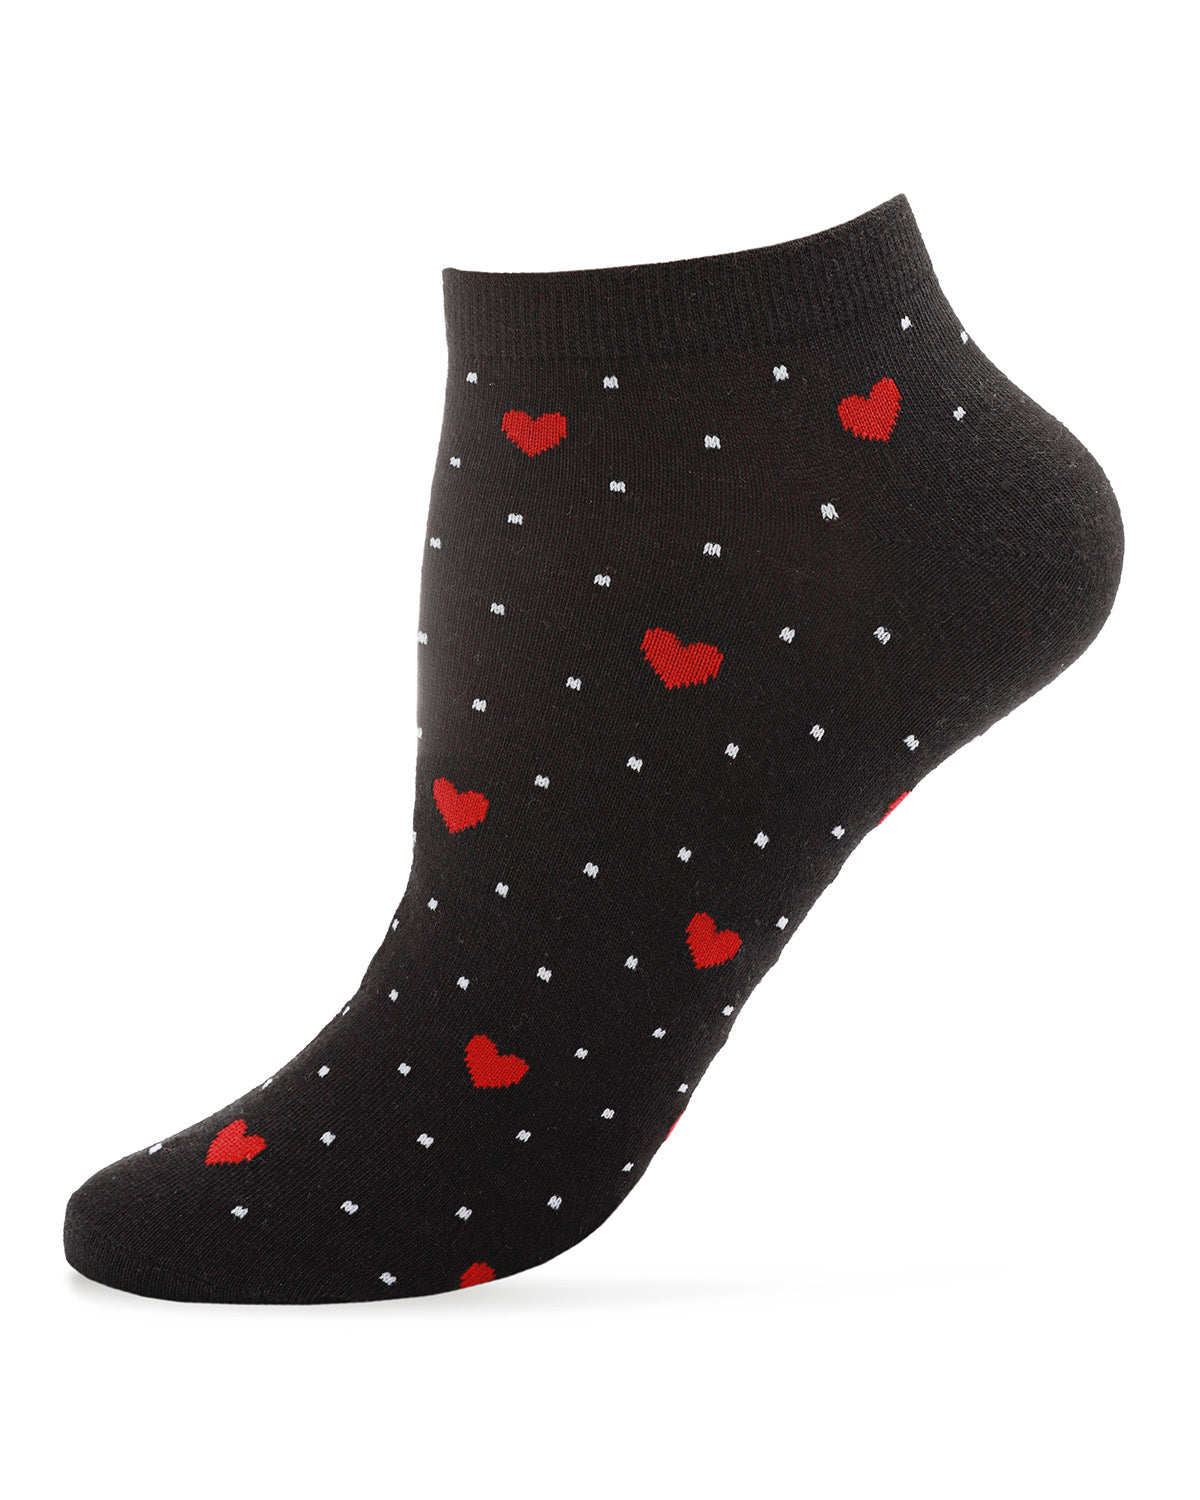 Sweetheart Low-Cut Women's Socks